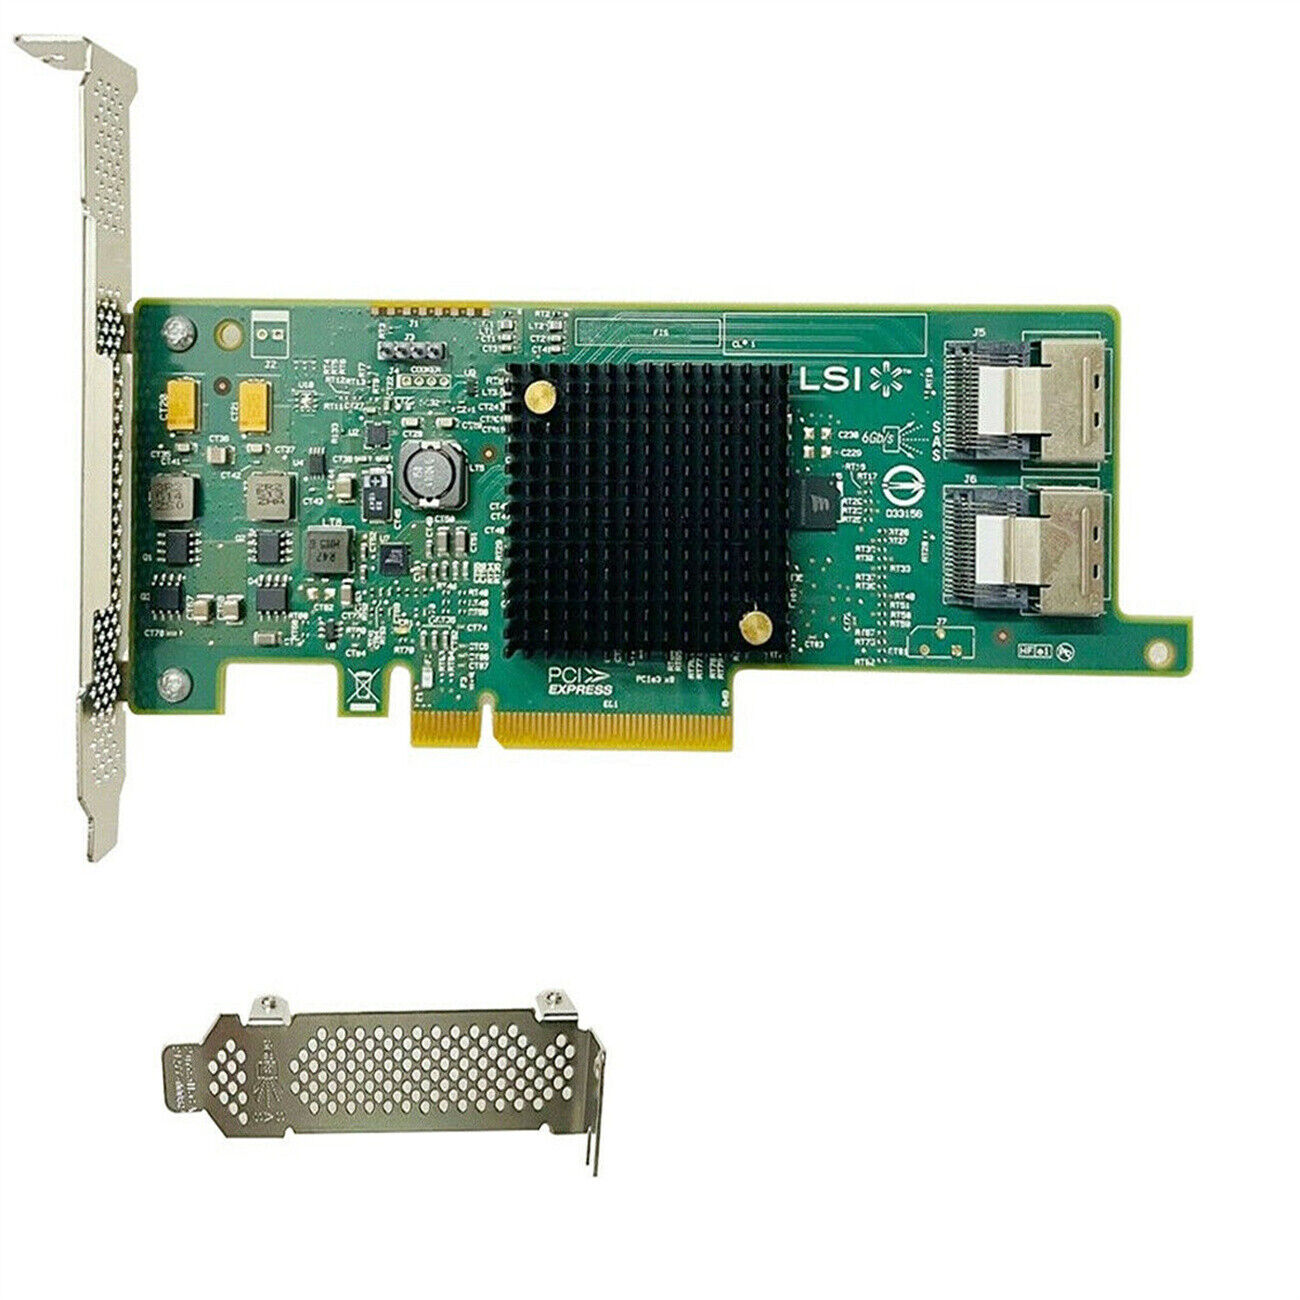 New LSI 9207-8i SATA/SAS 6Gb/s PCI-E 3.0 FW:P20 IT Mode For ZFS FreeNAS unRAID 